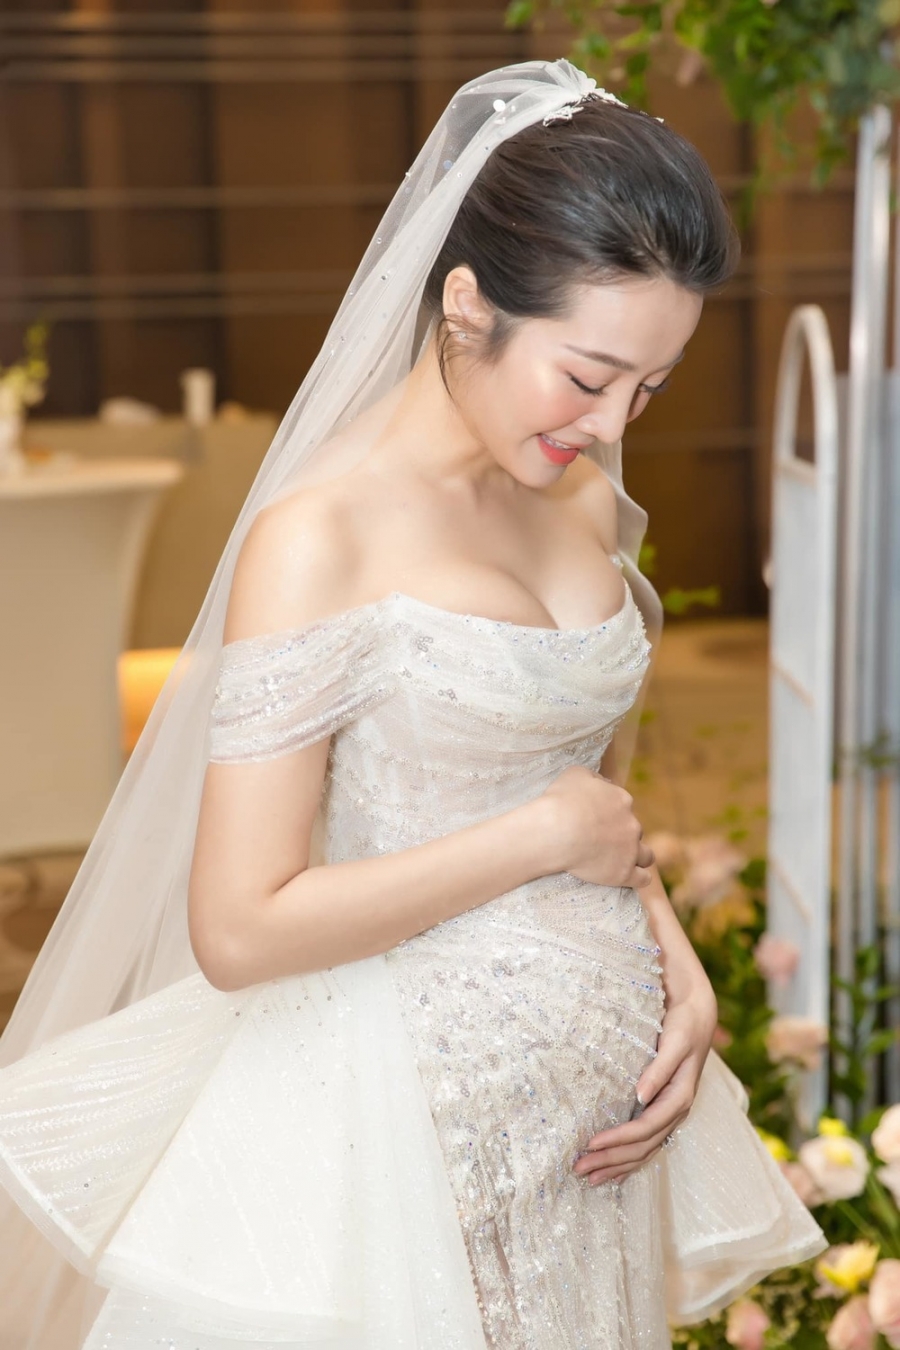 Trước đó, bất ngờ thông báo mang thai trong hôn lễ, Karen Nguyễn đã nhận về vô số lời chúc phúc của cư dân mạng. Chú rể cũng được mọi người khen là người đàn ông có trách nhiệm.